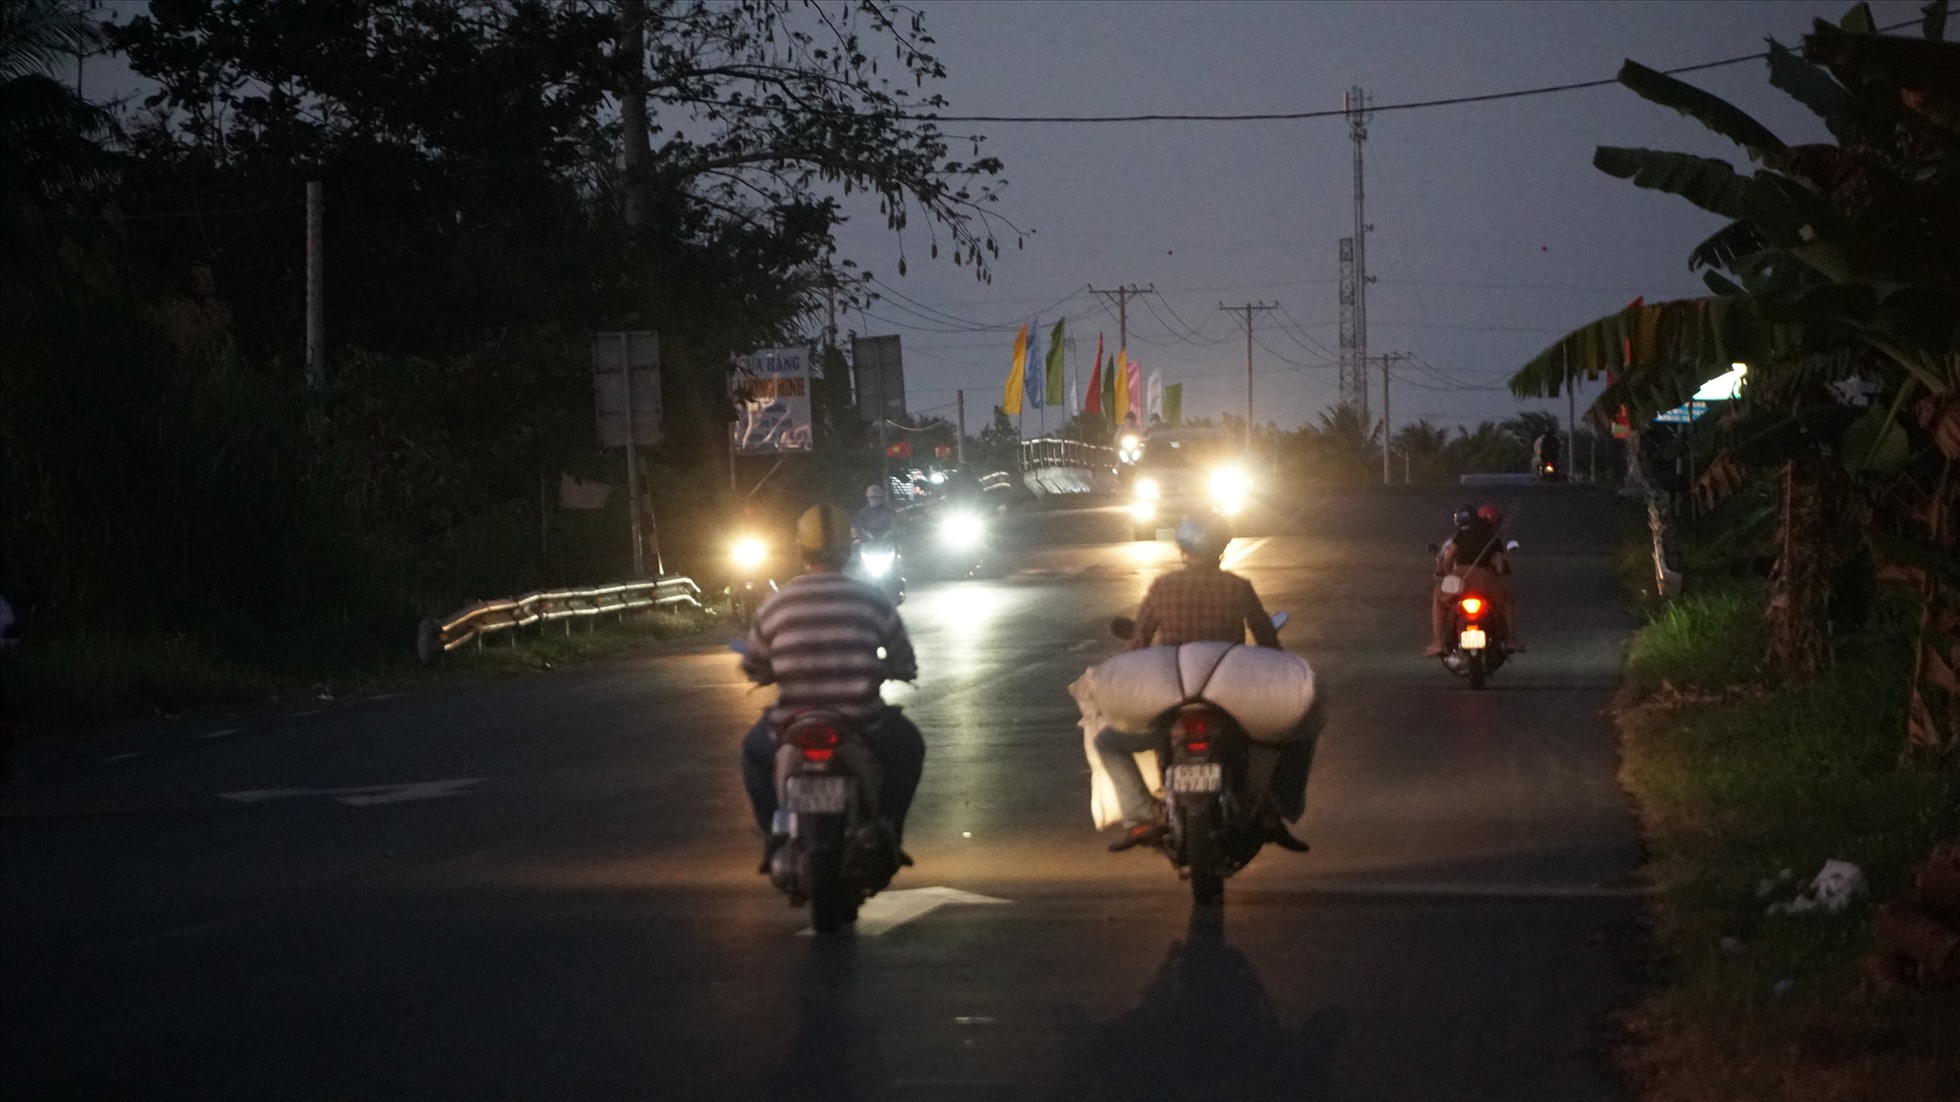 Là người sống ven Quốc lộ 91B từ lúc thông xe, chị Nguyễn Thị Kim Yên (45 tuổi, quận Bình Thủy) cho biết, tuyến Quốc lộ thông xe được hơn 10 năm nhưng đến thời điểm hiện tại vẫn chưa có đèn đường và khoảng gần 2 năm trở lại đây thì đường tỉnh 922 được mở.